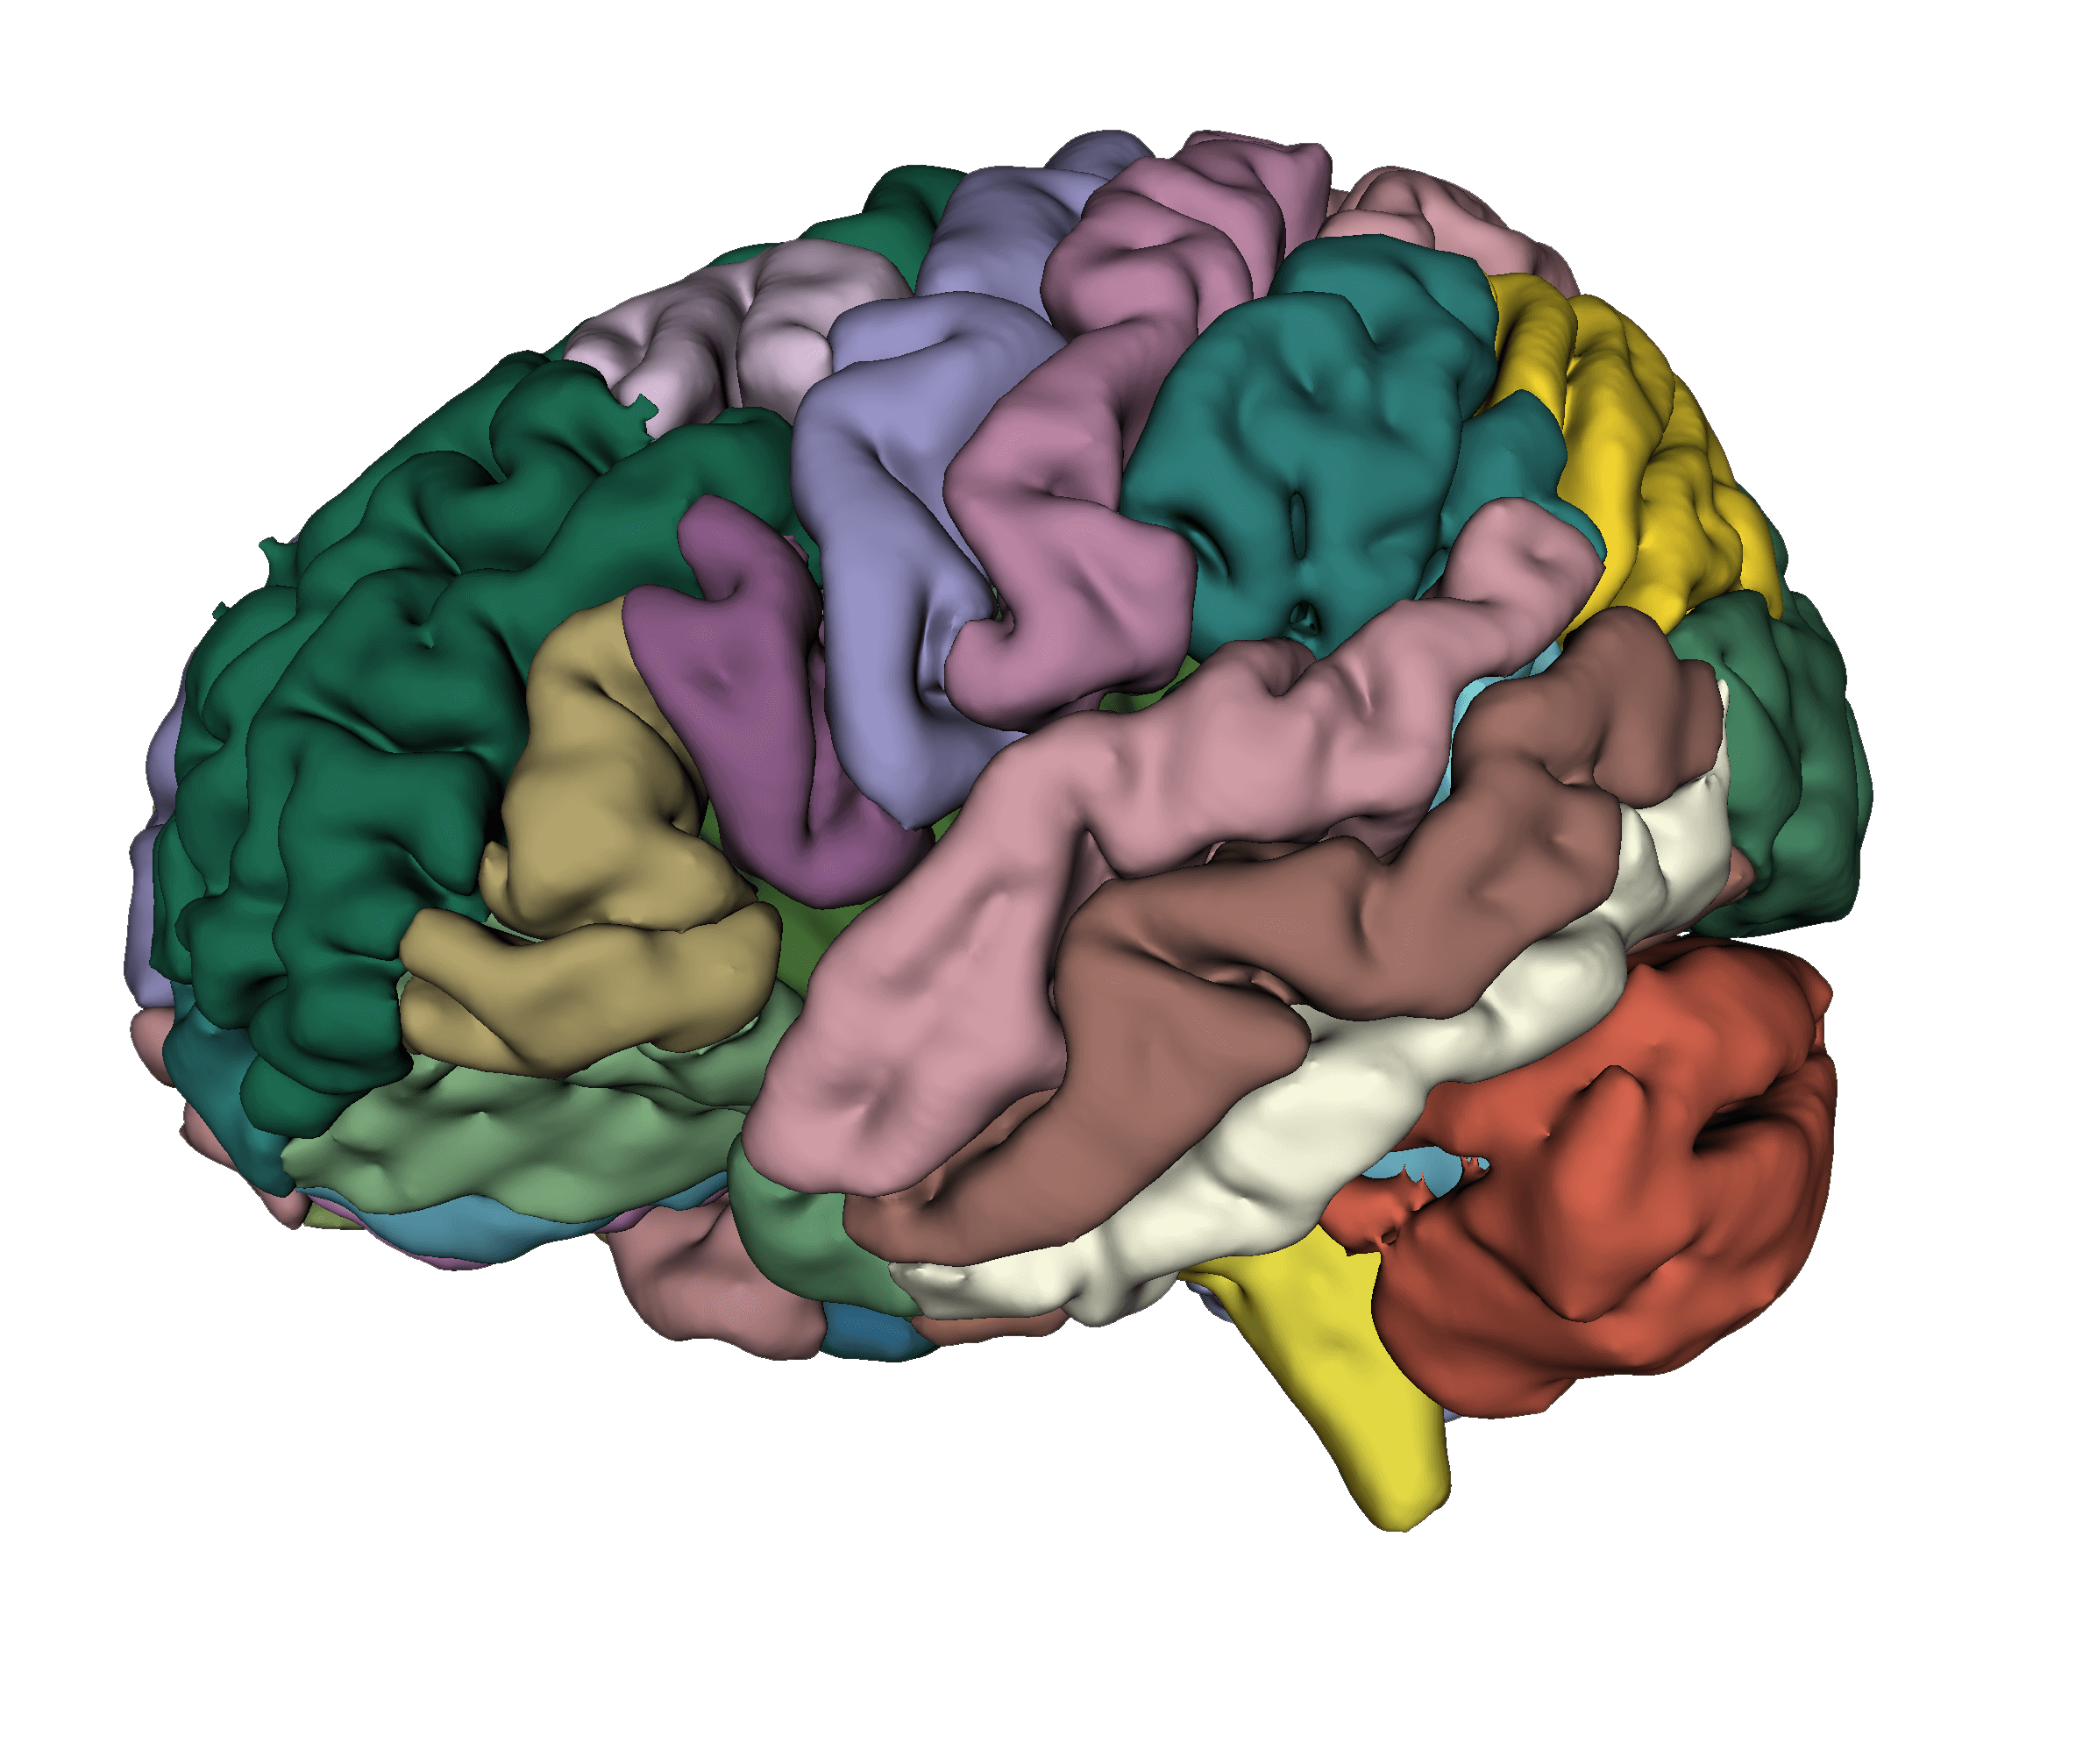 Hetalox brain segmentation